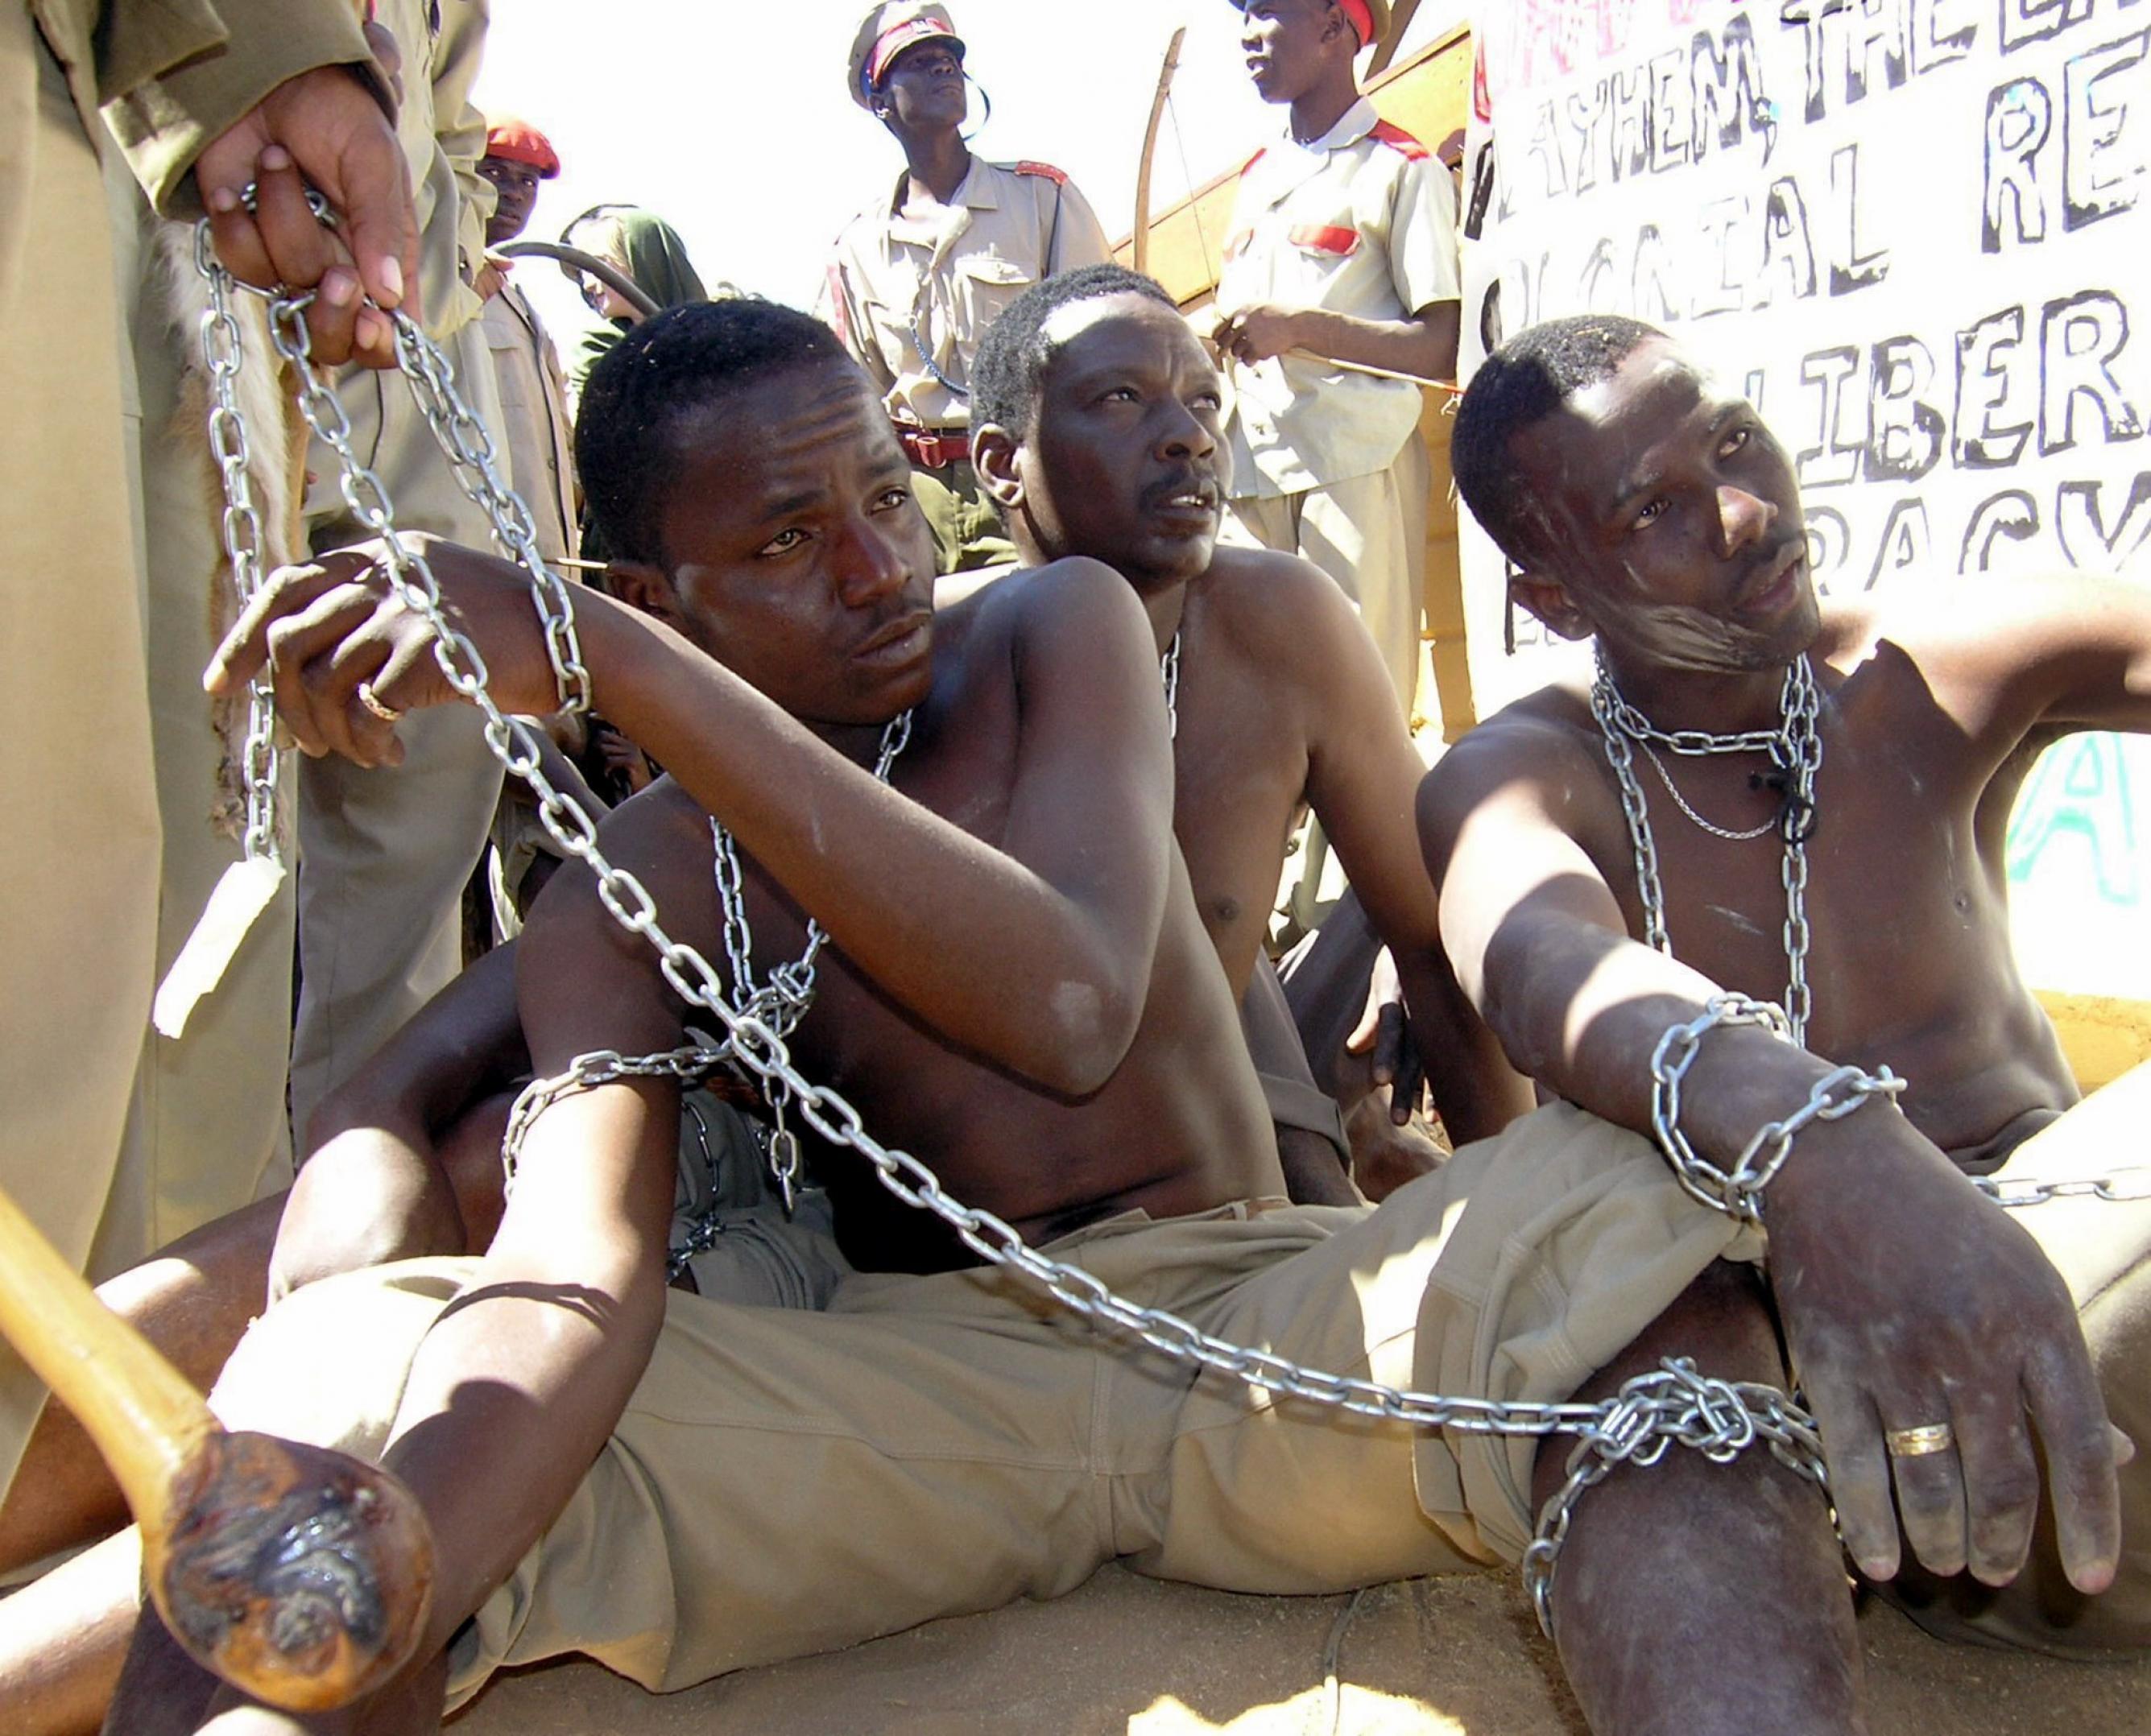 Darsteller in Ketten demonstrieren die Behandlung von Hereros im Jahre 1904 durch Deutsche Truppen im heutigen Namibia